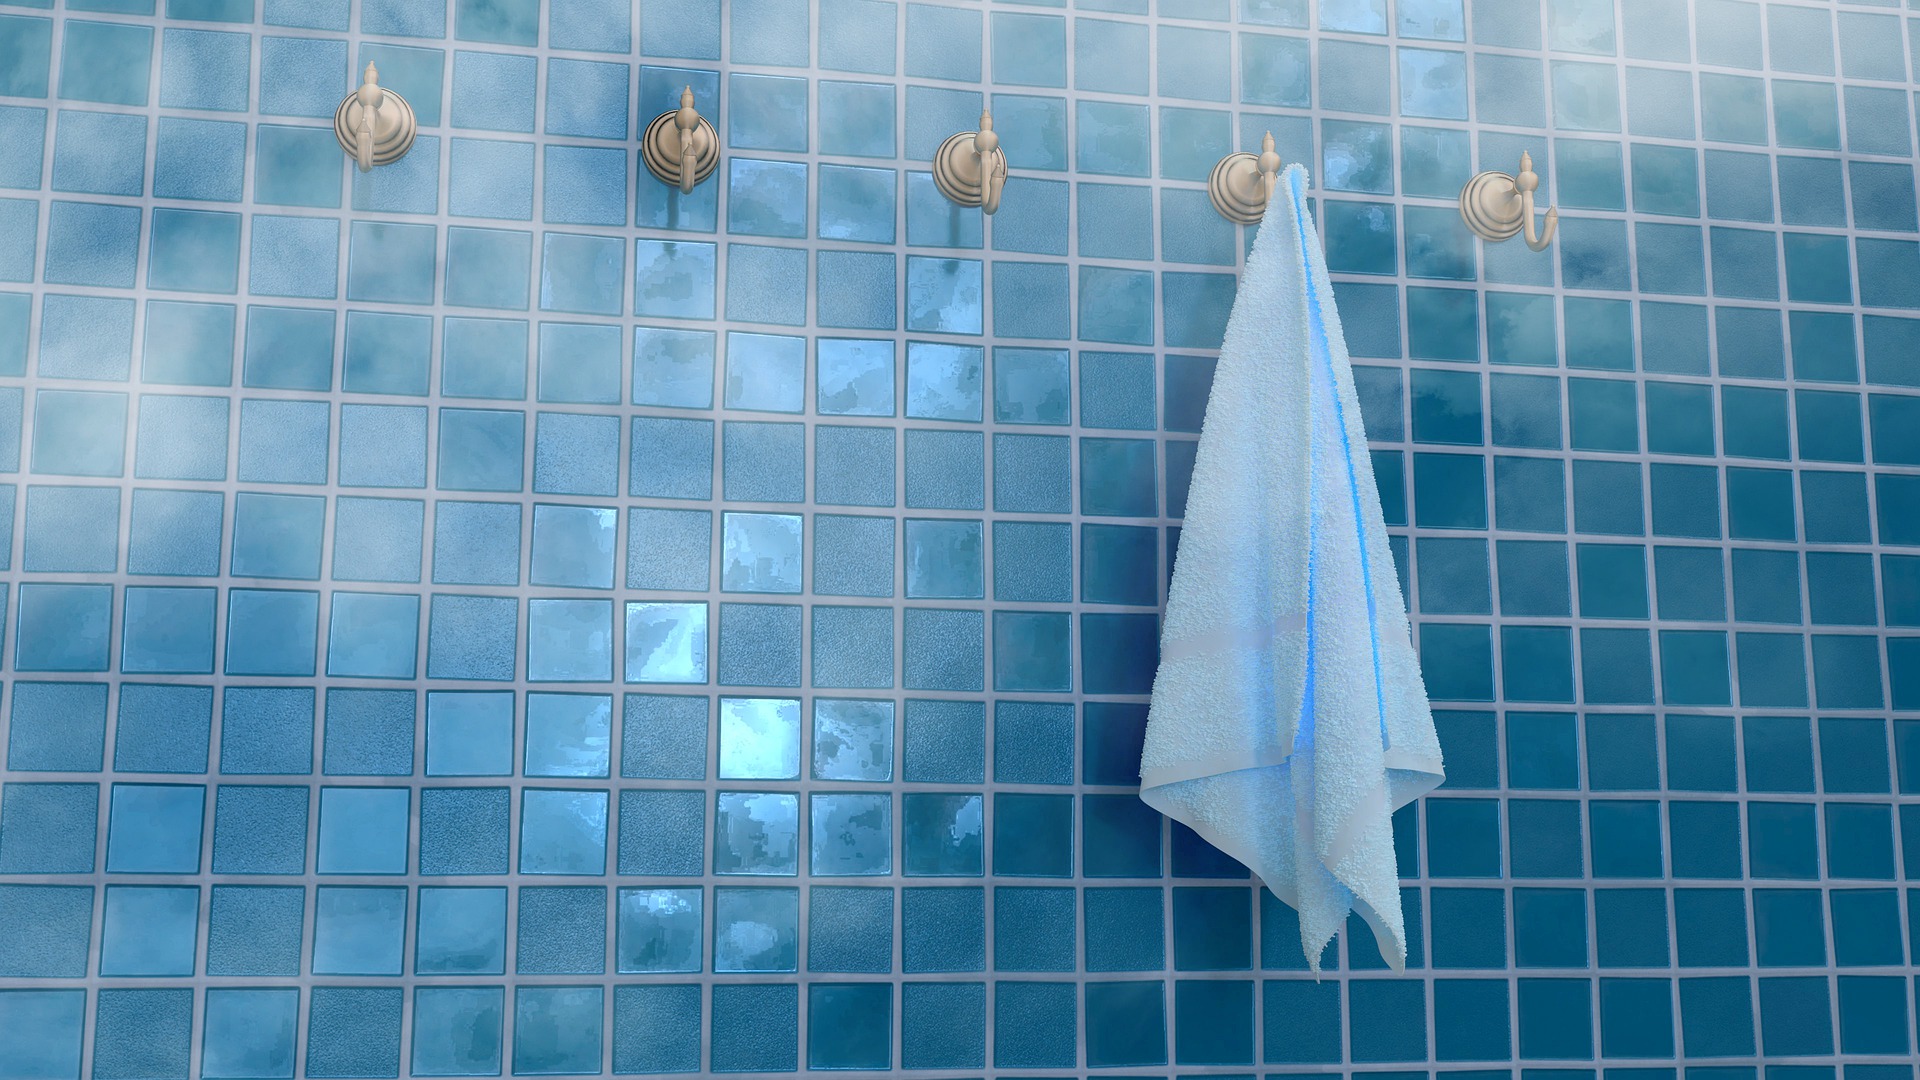 Badezimmer mit blauen Kacheln und mit Handtuchhaltern an der Wand, an denen ein weisses Handtuch hängt.